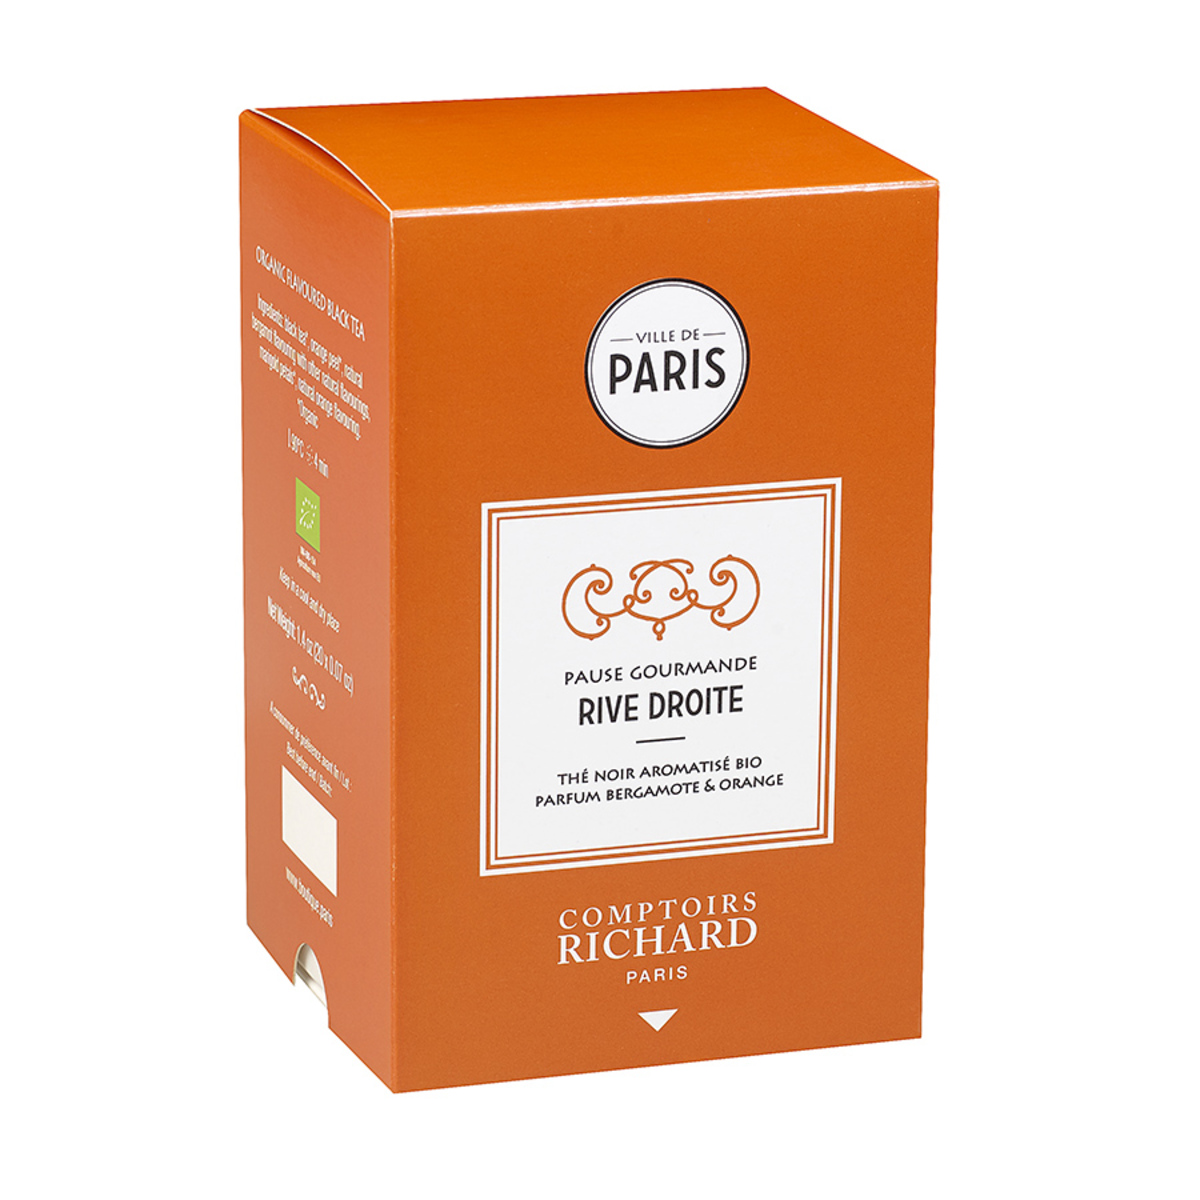 Thé noir aromatisé bio parfum bergamote orange Pause Gourmande Rive Droite ville de Paris sachets mousseline x20